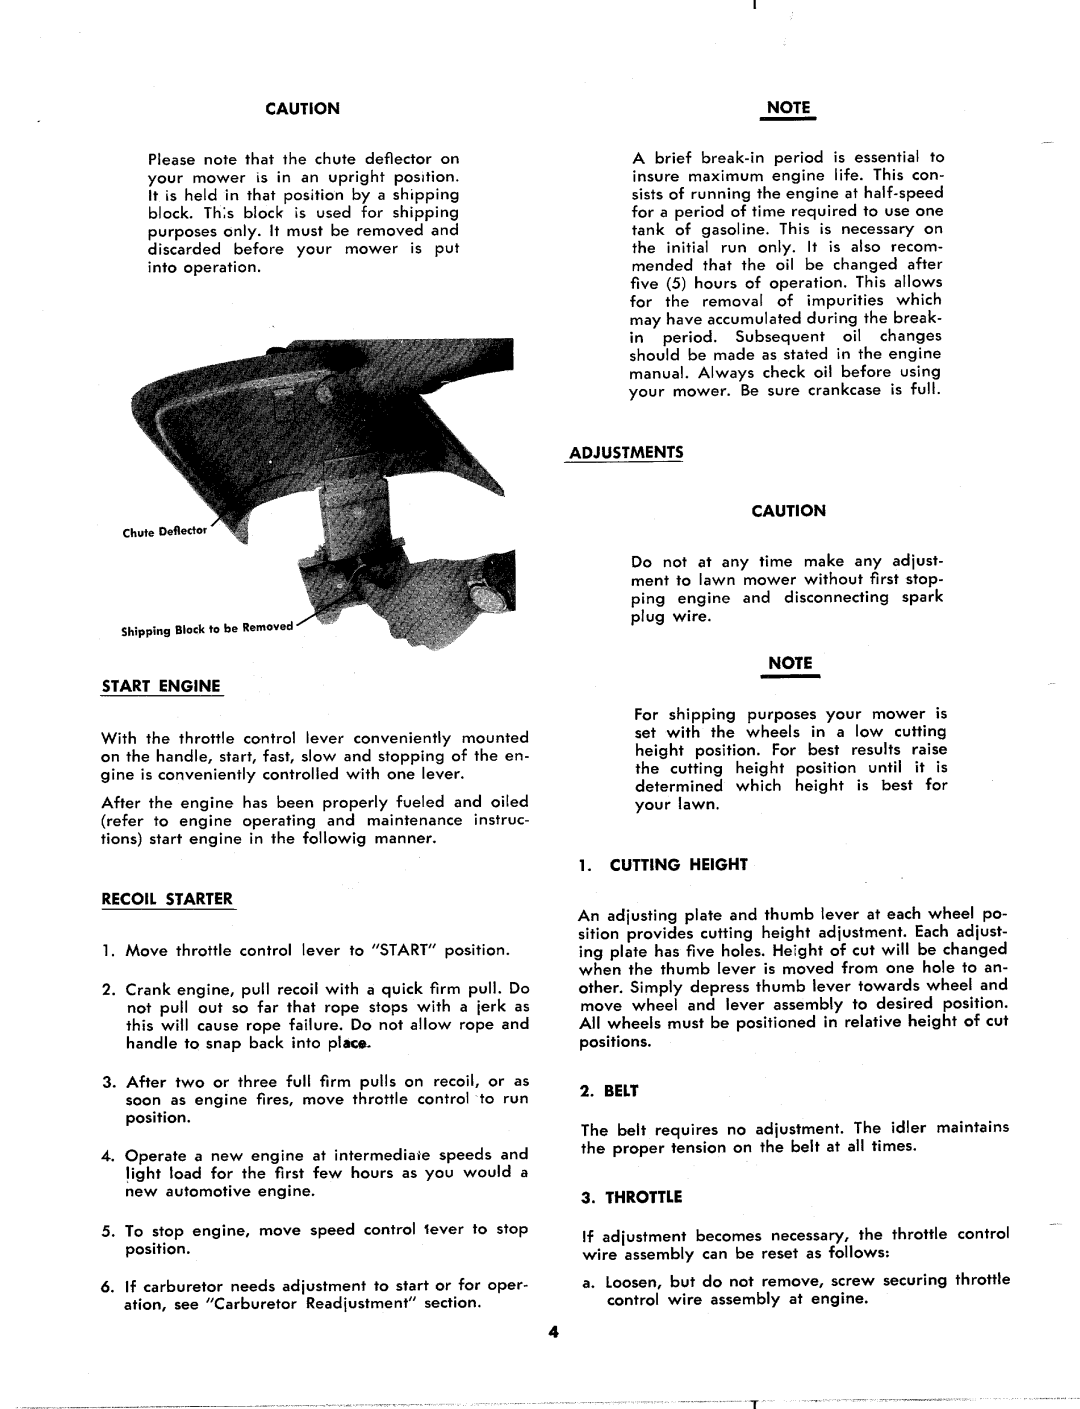 MTD 124-280A manual 